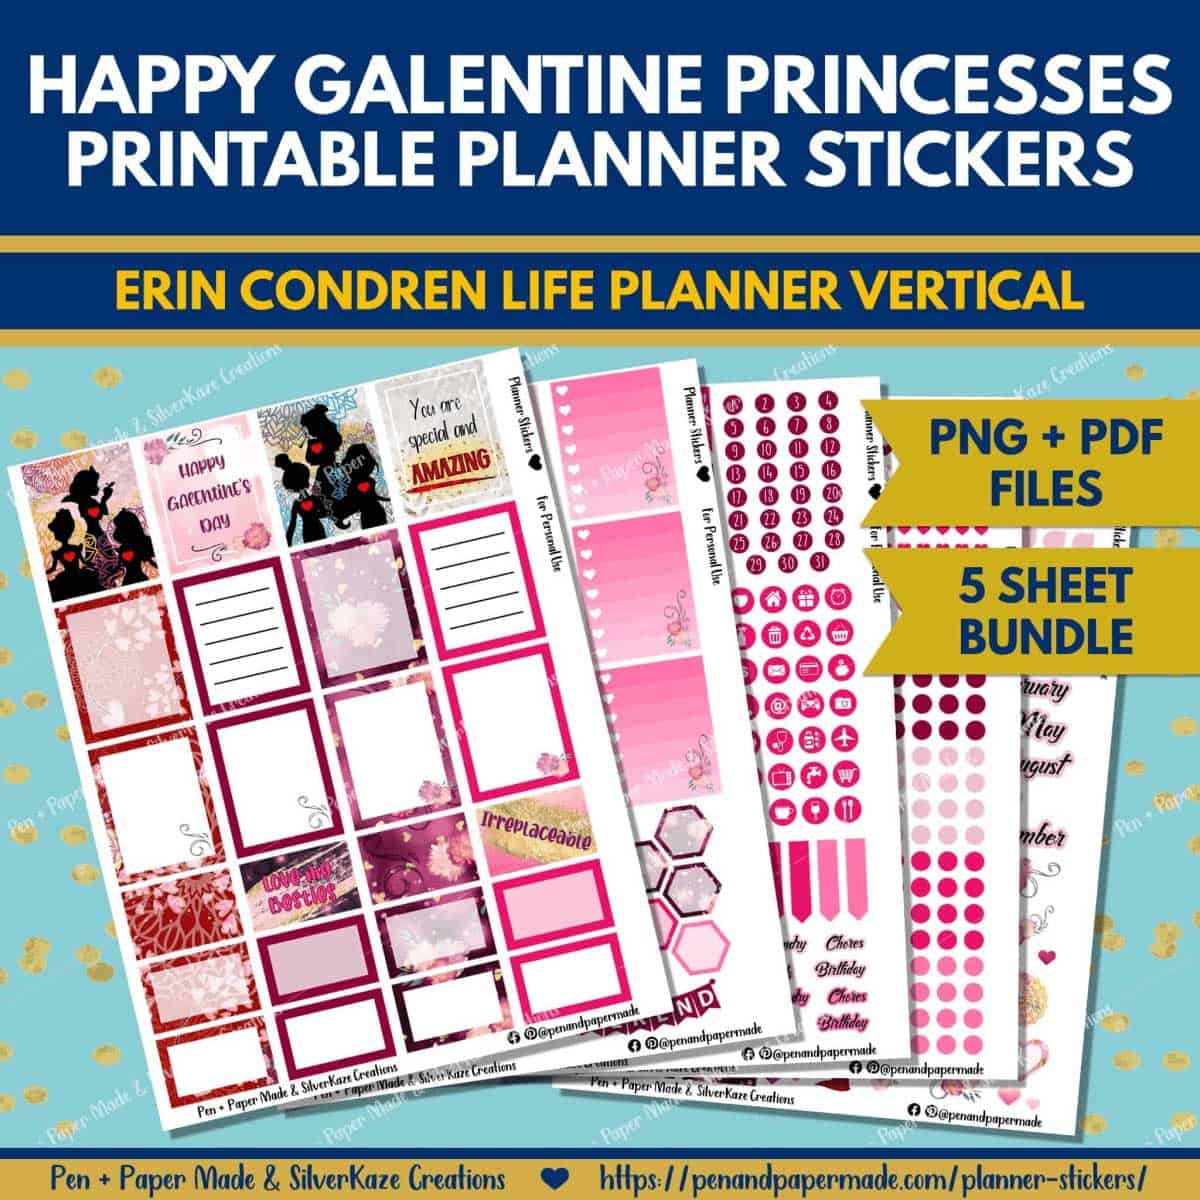 most popular valentine galentine princess printable planner sticker bundle.